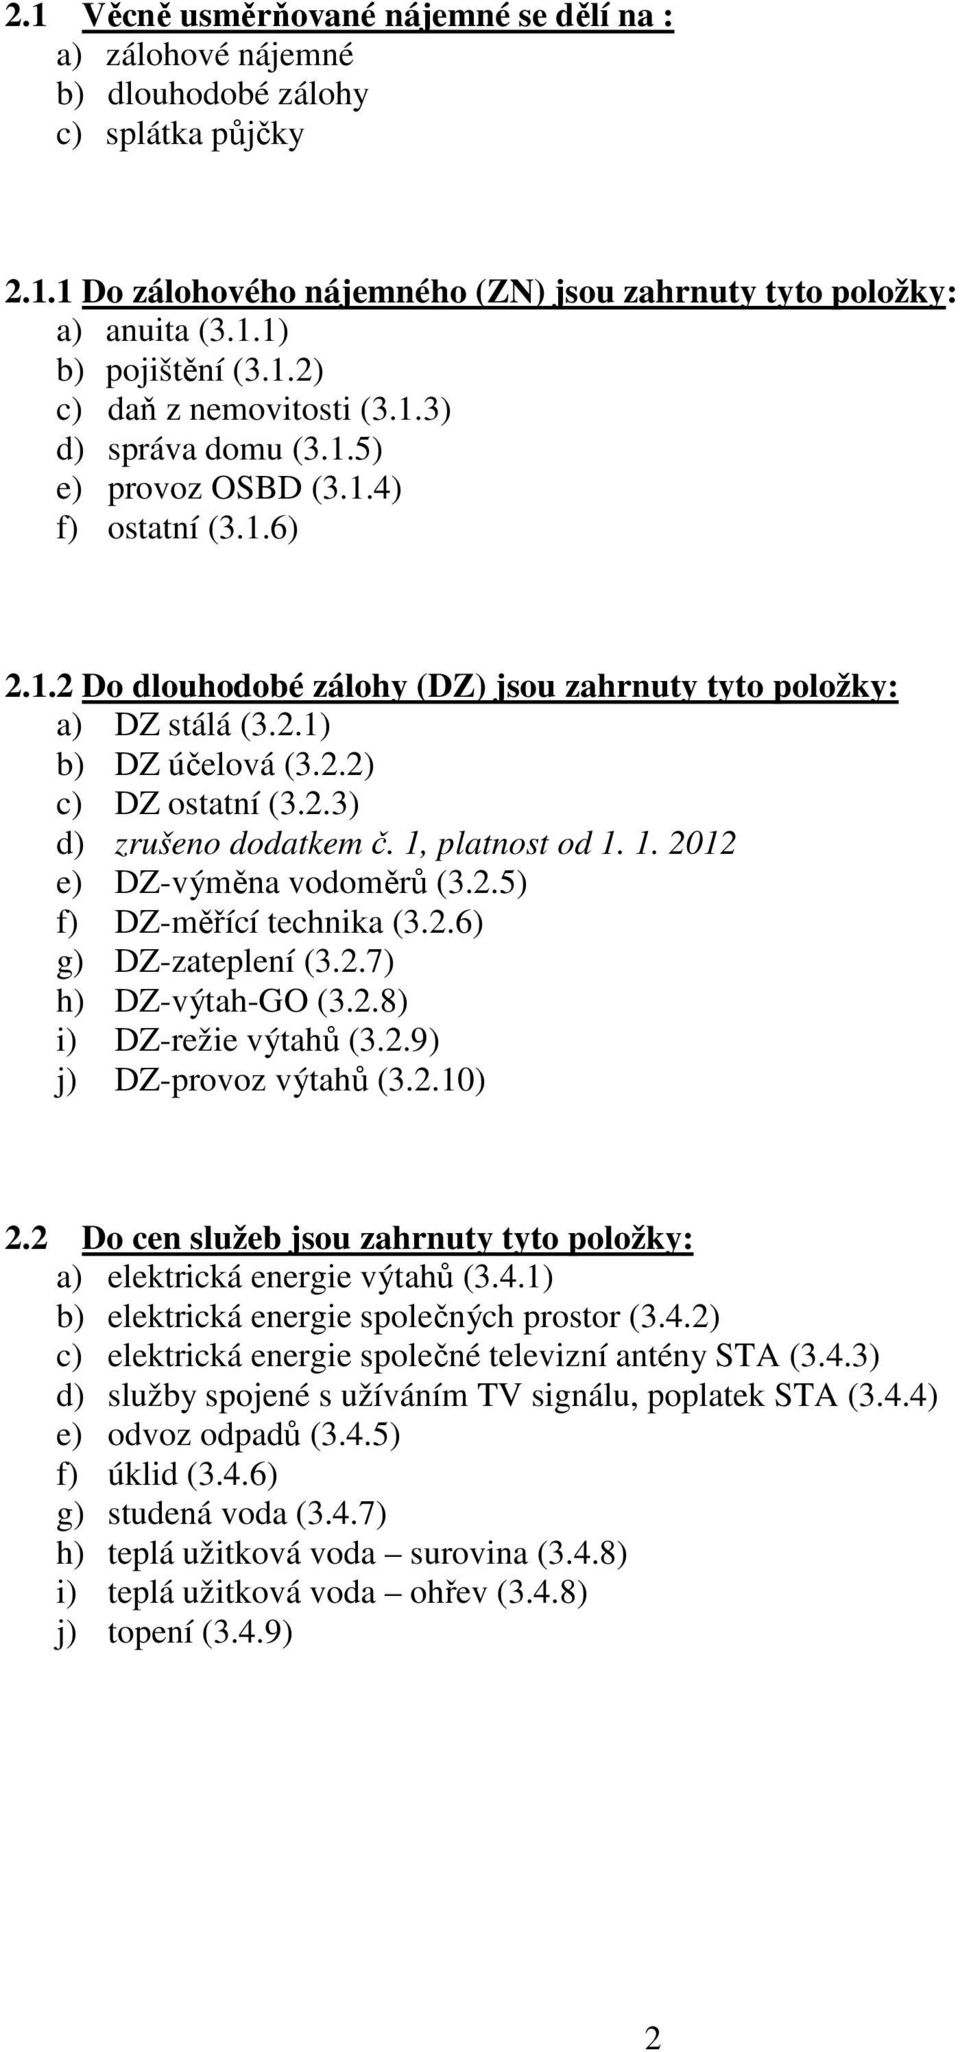 2.3) d) zrušeno dodatkem č. 1, platnost od 1. 1. 2012 e) DZ-výměna vodoměrů (3.2.5) f) DZ-měřící technika (3.2.6) g) DZ-zateplení (3.2.7) h) DZ-výtah-GO (3.2.8) i) DZ-režie výtahů (3.2.9) j) DZ-provoz výtahů (3.